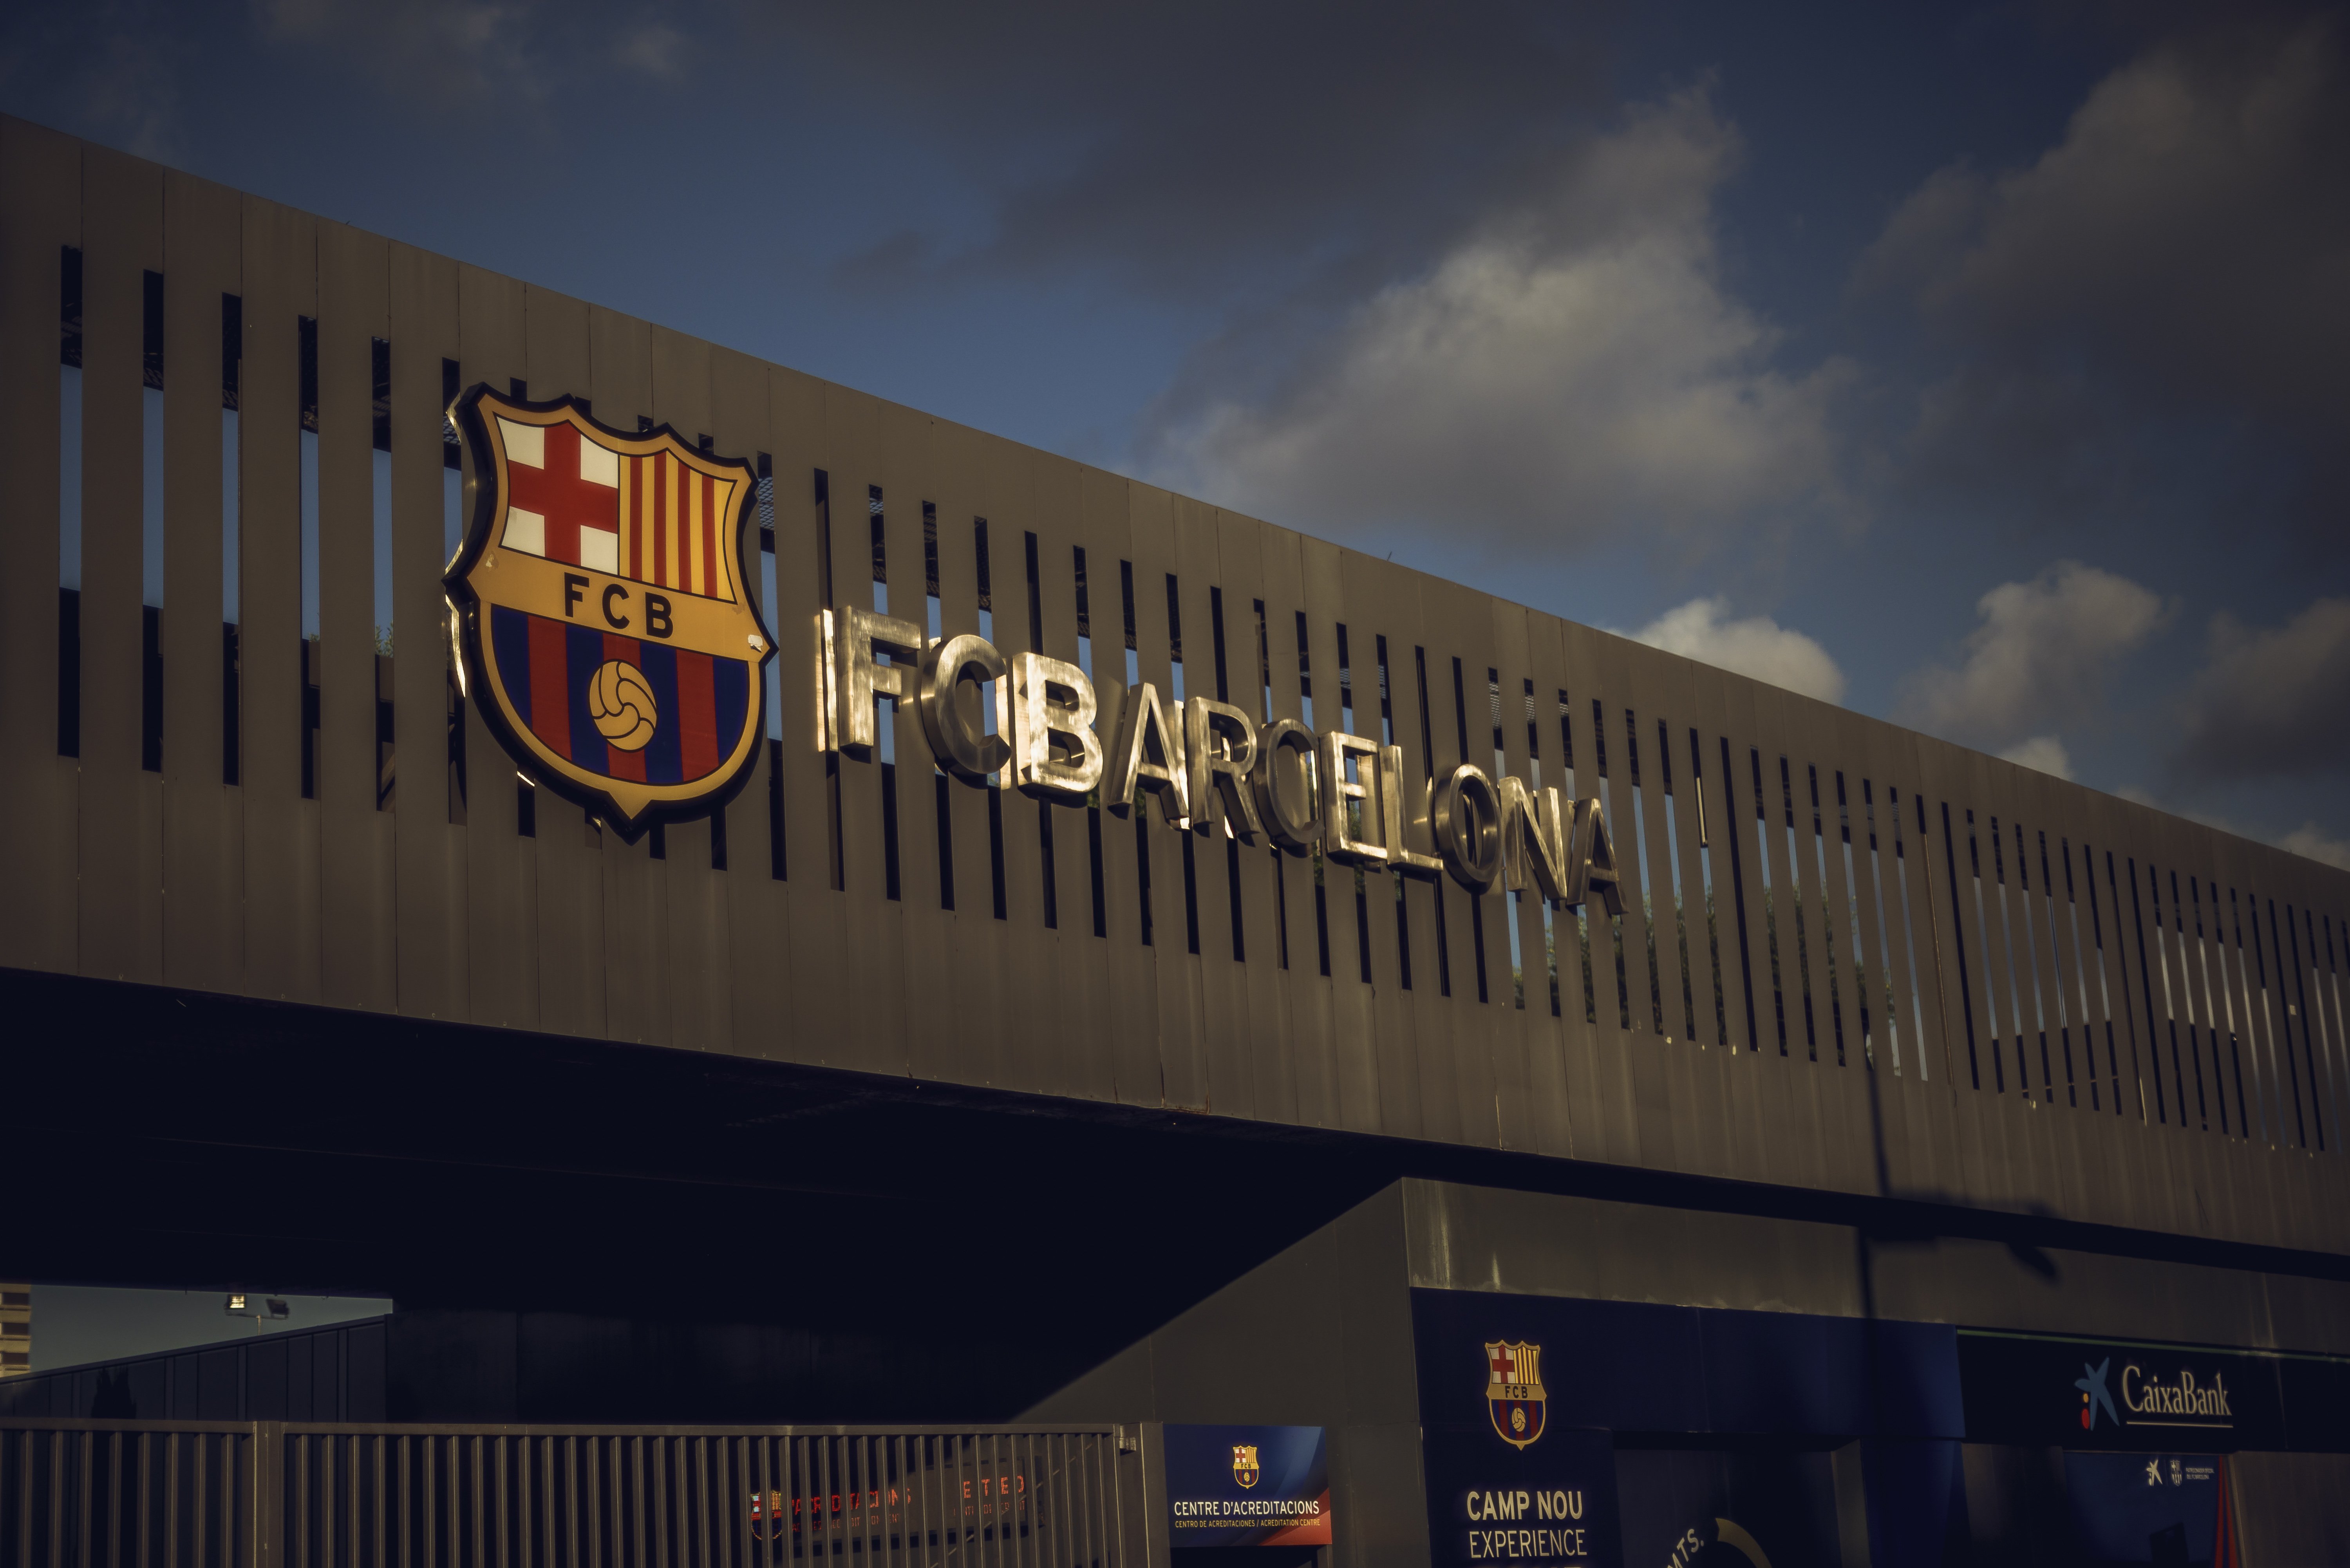 El Barça proposa que el vot de censura només tingui una seu: el Camp Nou